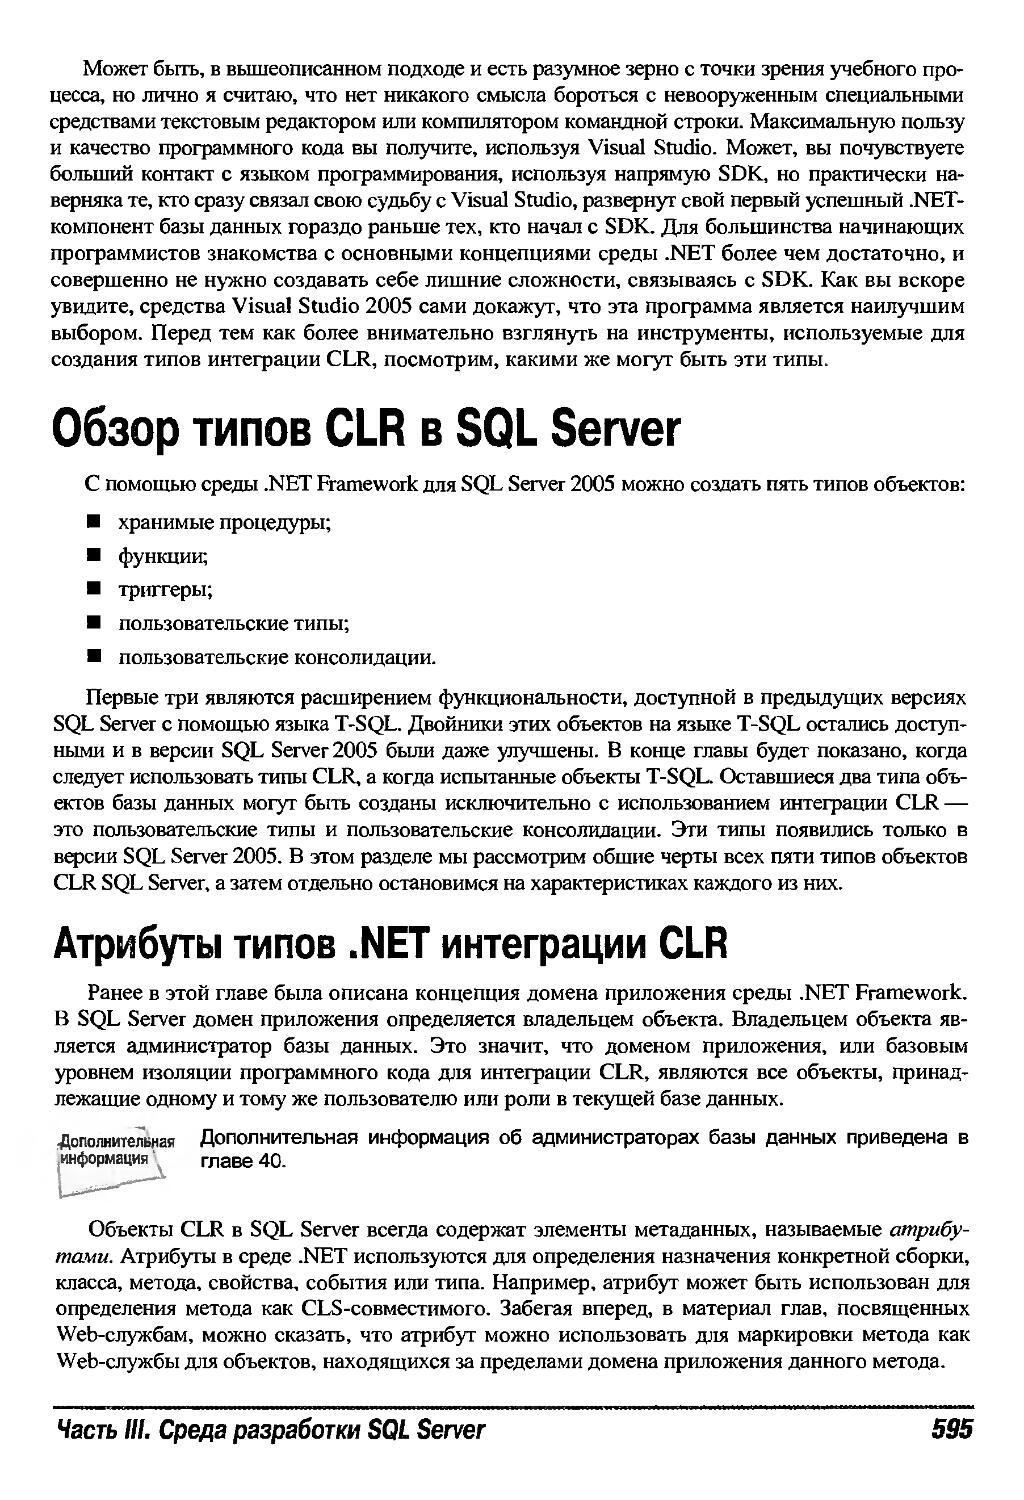 Обзор типов CLR в SQL Server